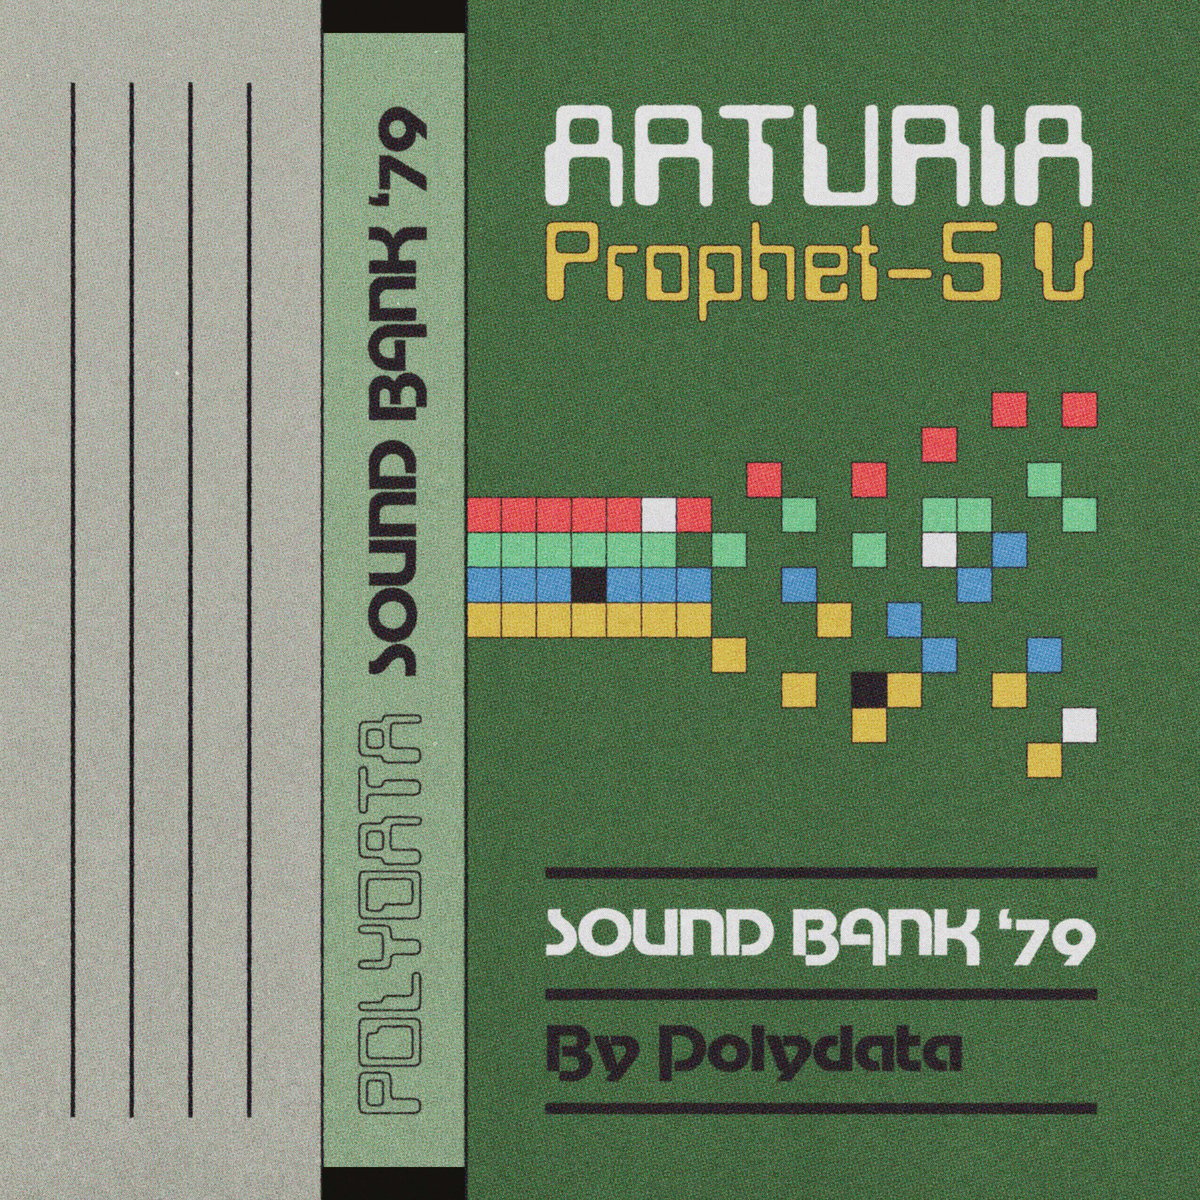 Image of Arturia Prophet-5 V - Sound Bank '79